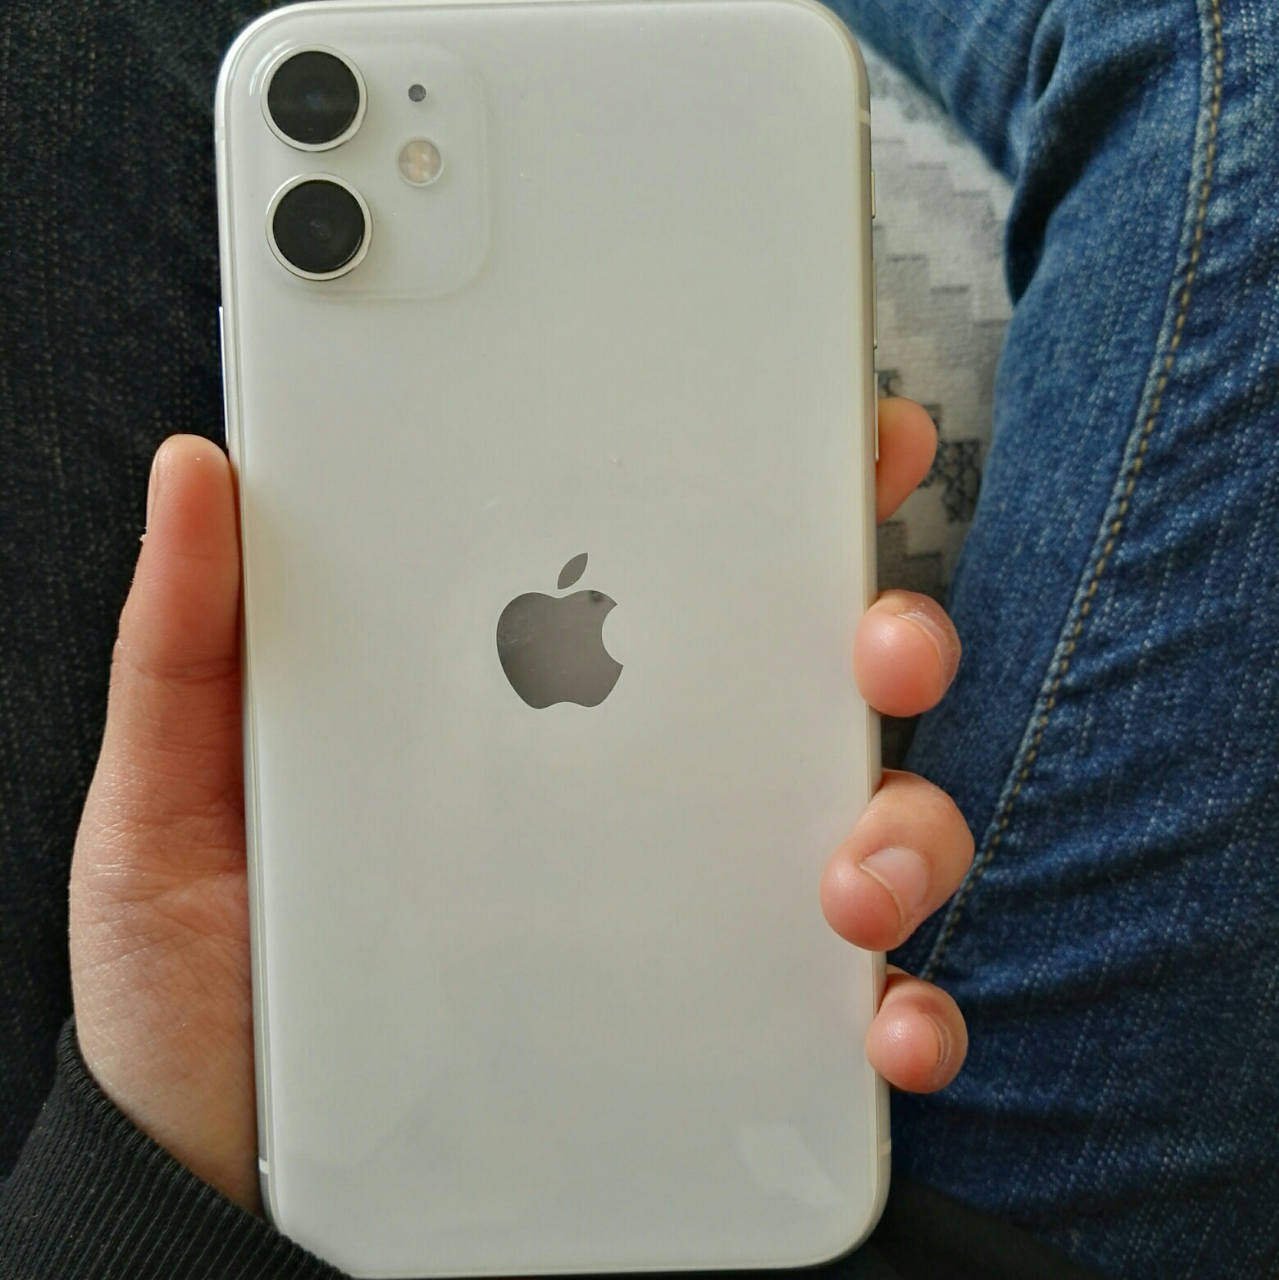 [全新原装正品]苹果Apple iPhone 11移动电信4G智能手机美版有锁配合卡贴解锁64GB 白色[裸机]晒单图